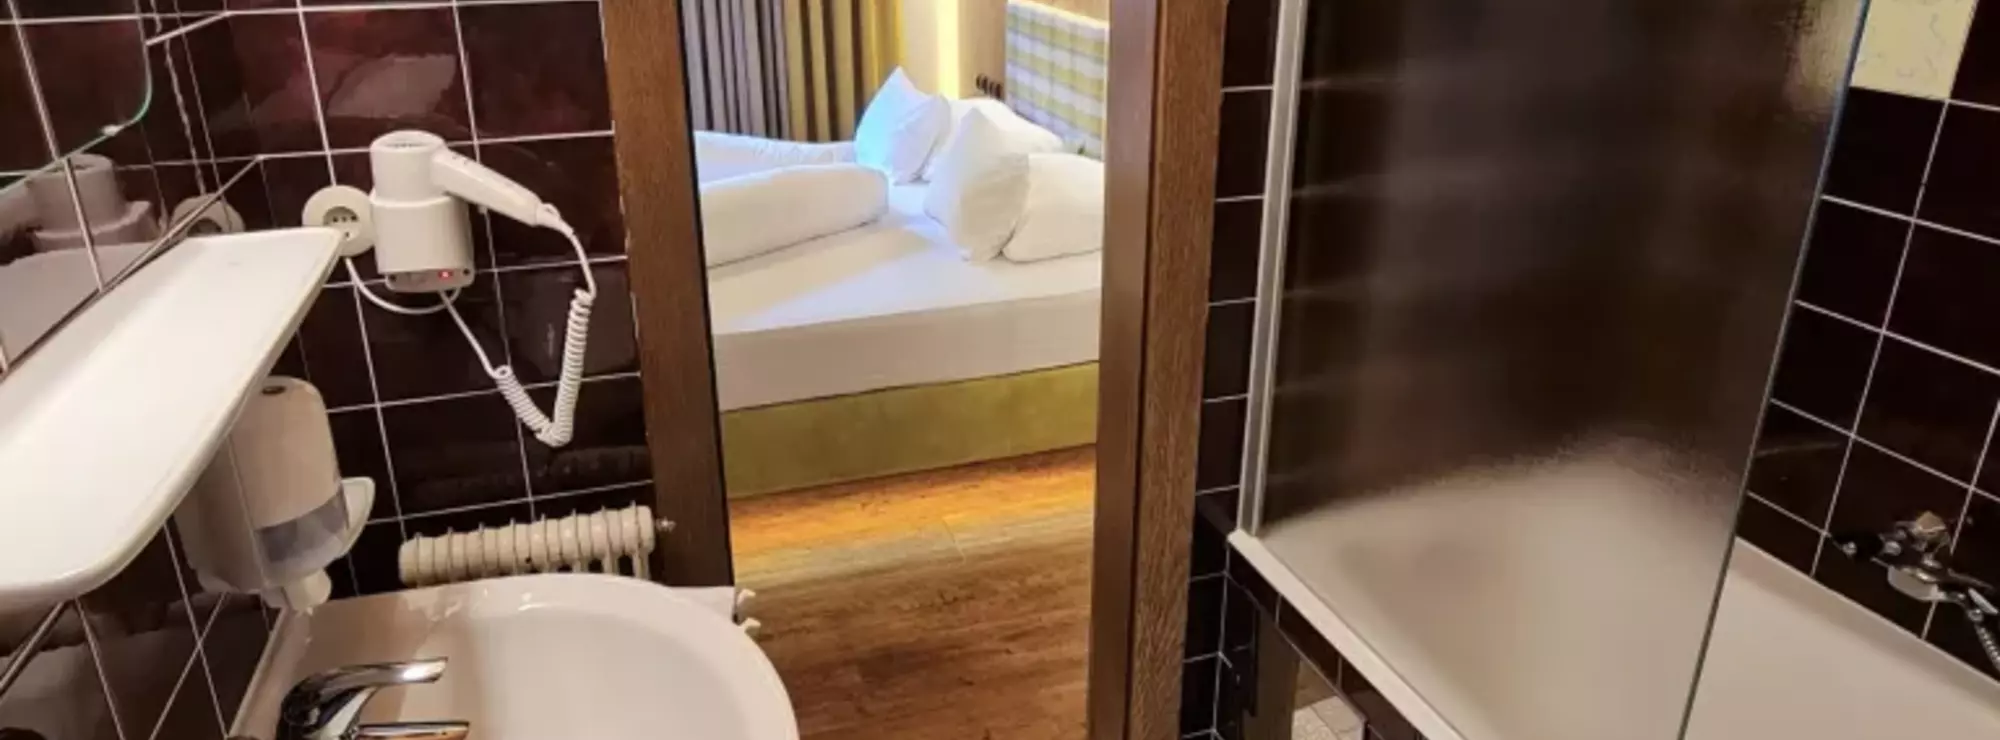 Rustikales Badezimmer in einem Hotelzimmer